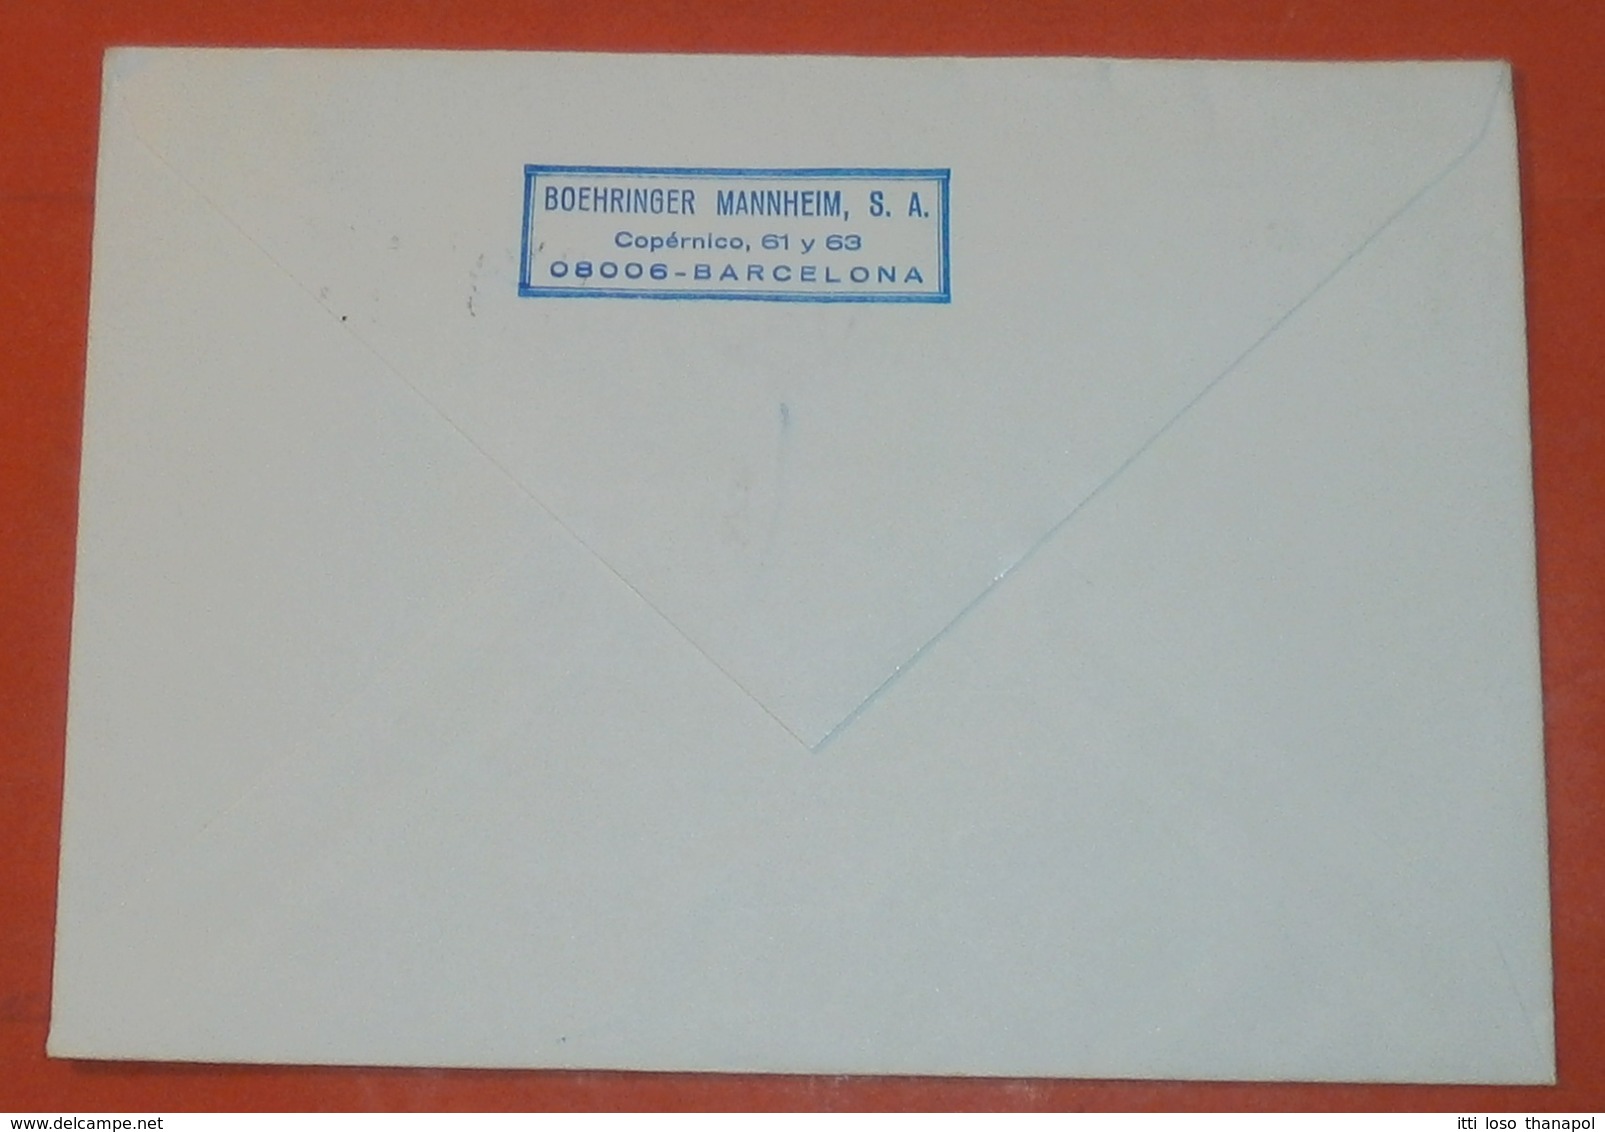 SPANIEN 2703 Weihnachten -- Barcelona 20.12.1985 -- Boehninger Mannheim S.A. -- Brief Cover (2 Foto)(37836) - Lettres & Documents